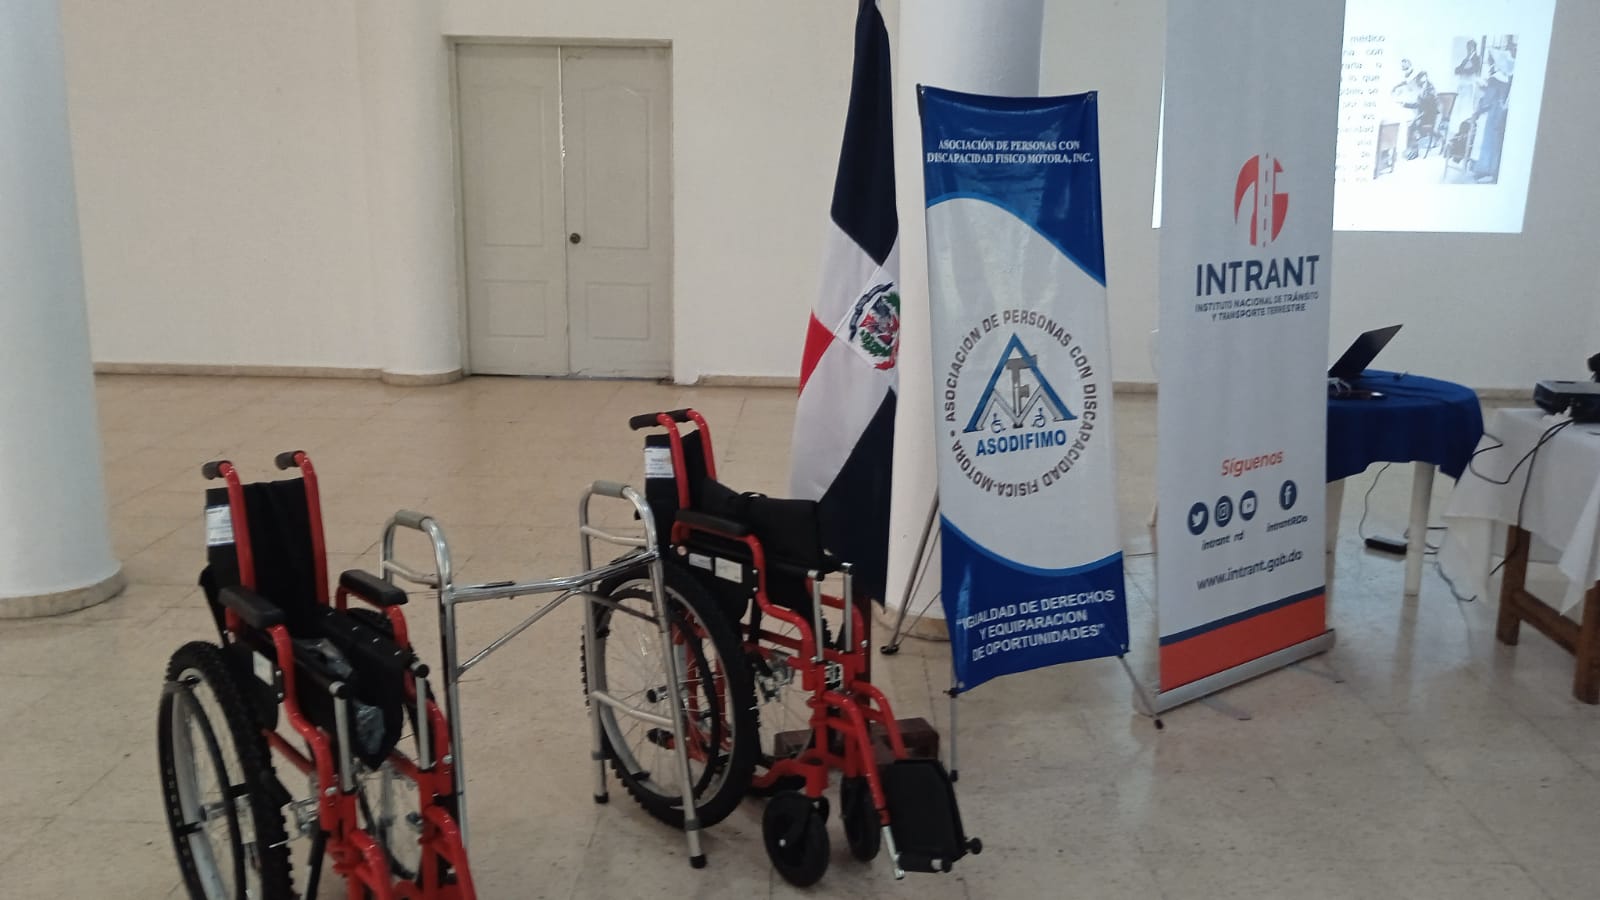 “ASODIFIMO junto al INTRANT sensibilizan a choferes del transporte público y privado sobre Inclusión de las Personas con Discapacidad en el transporte y la Terminología apropiada para referirse a las personas con discapacidad.”